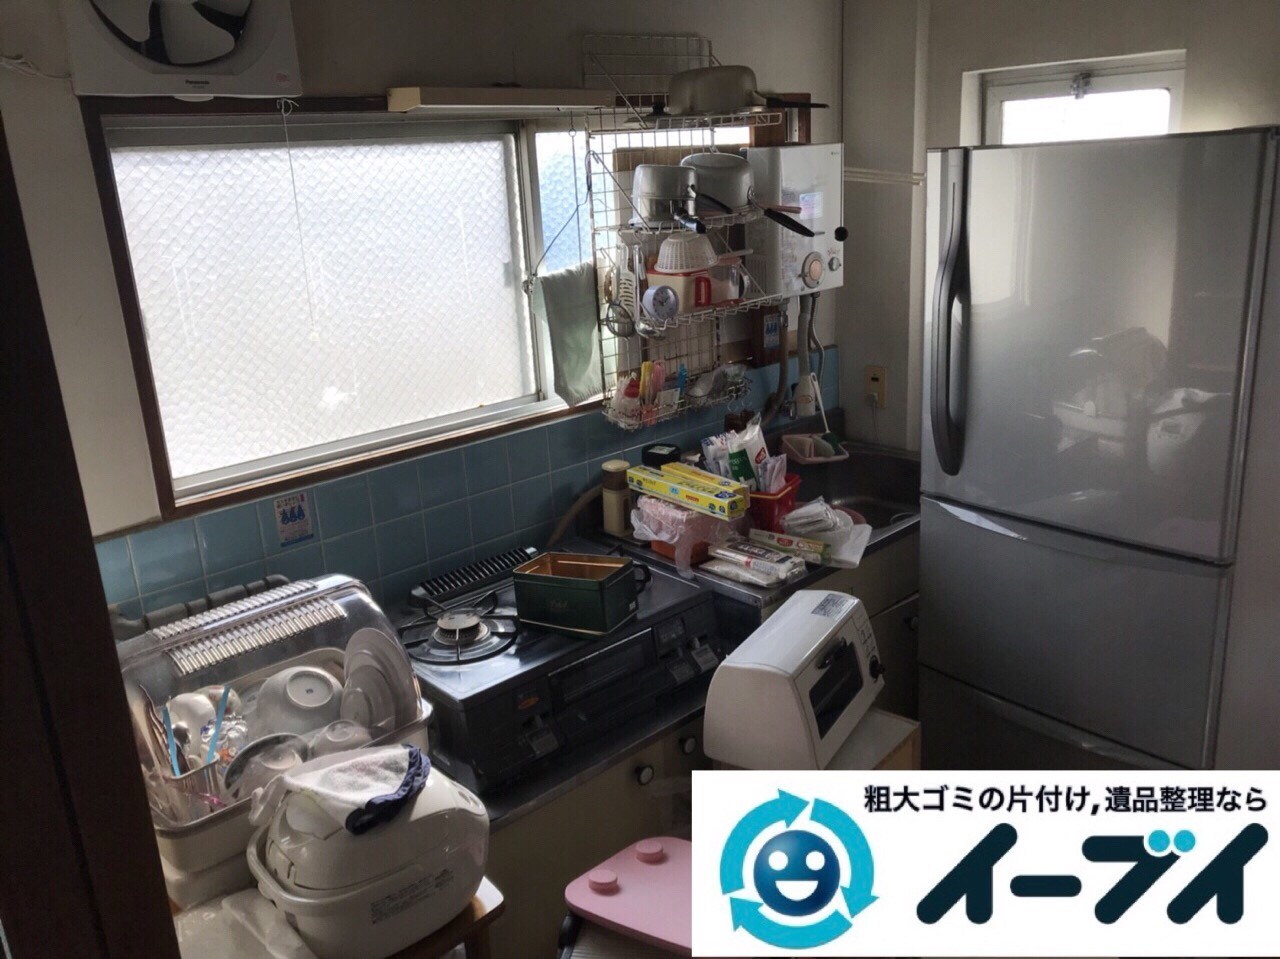 2018年3月23日写真大阪府大阪市鶴見区でガスコンロや冷蔵庫など家電製品の不用品回収をしました。写真1